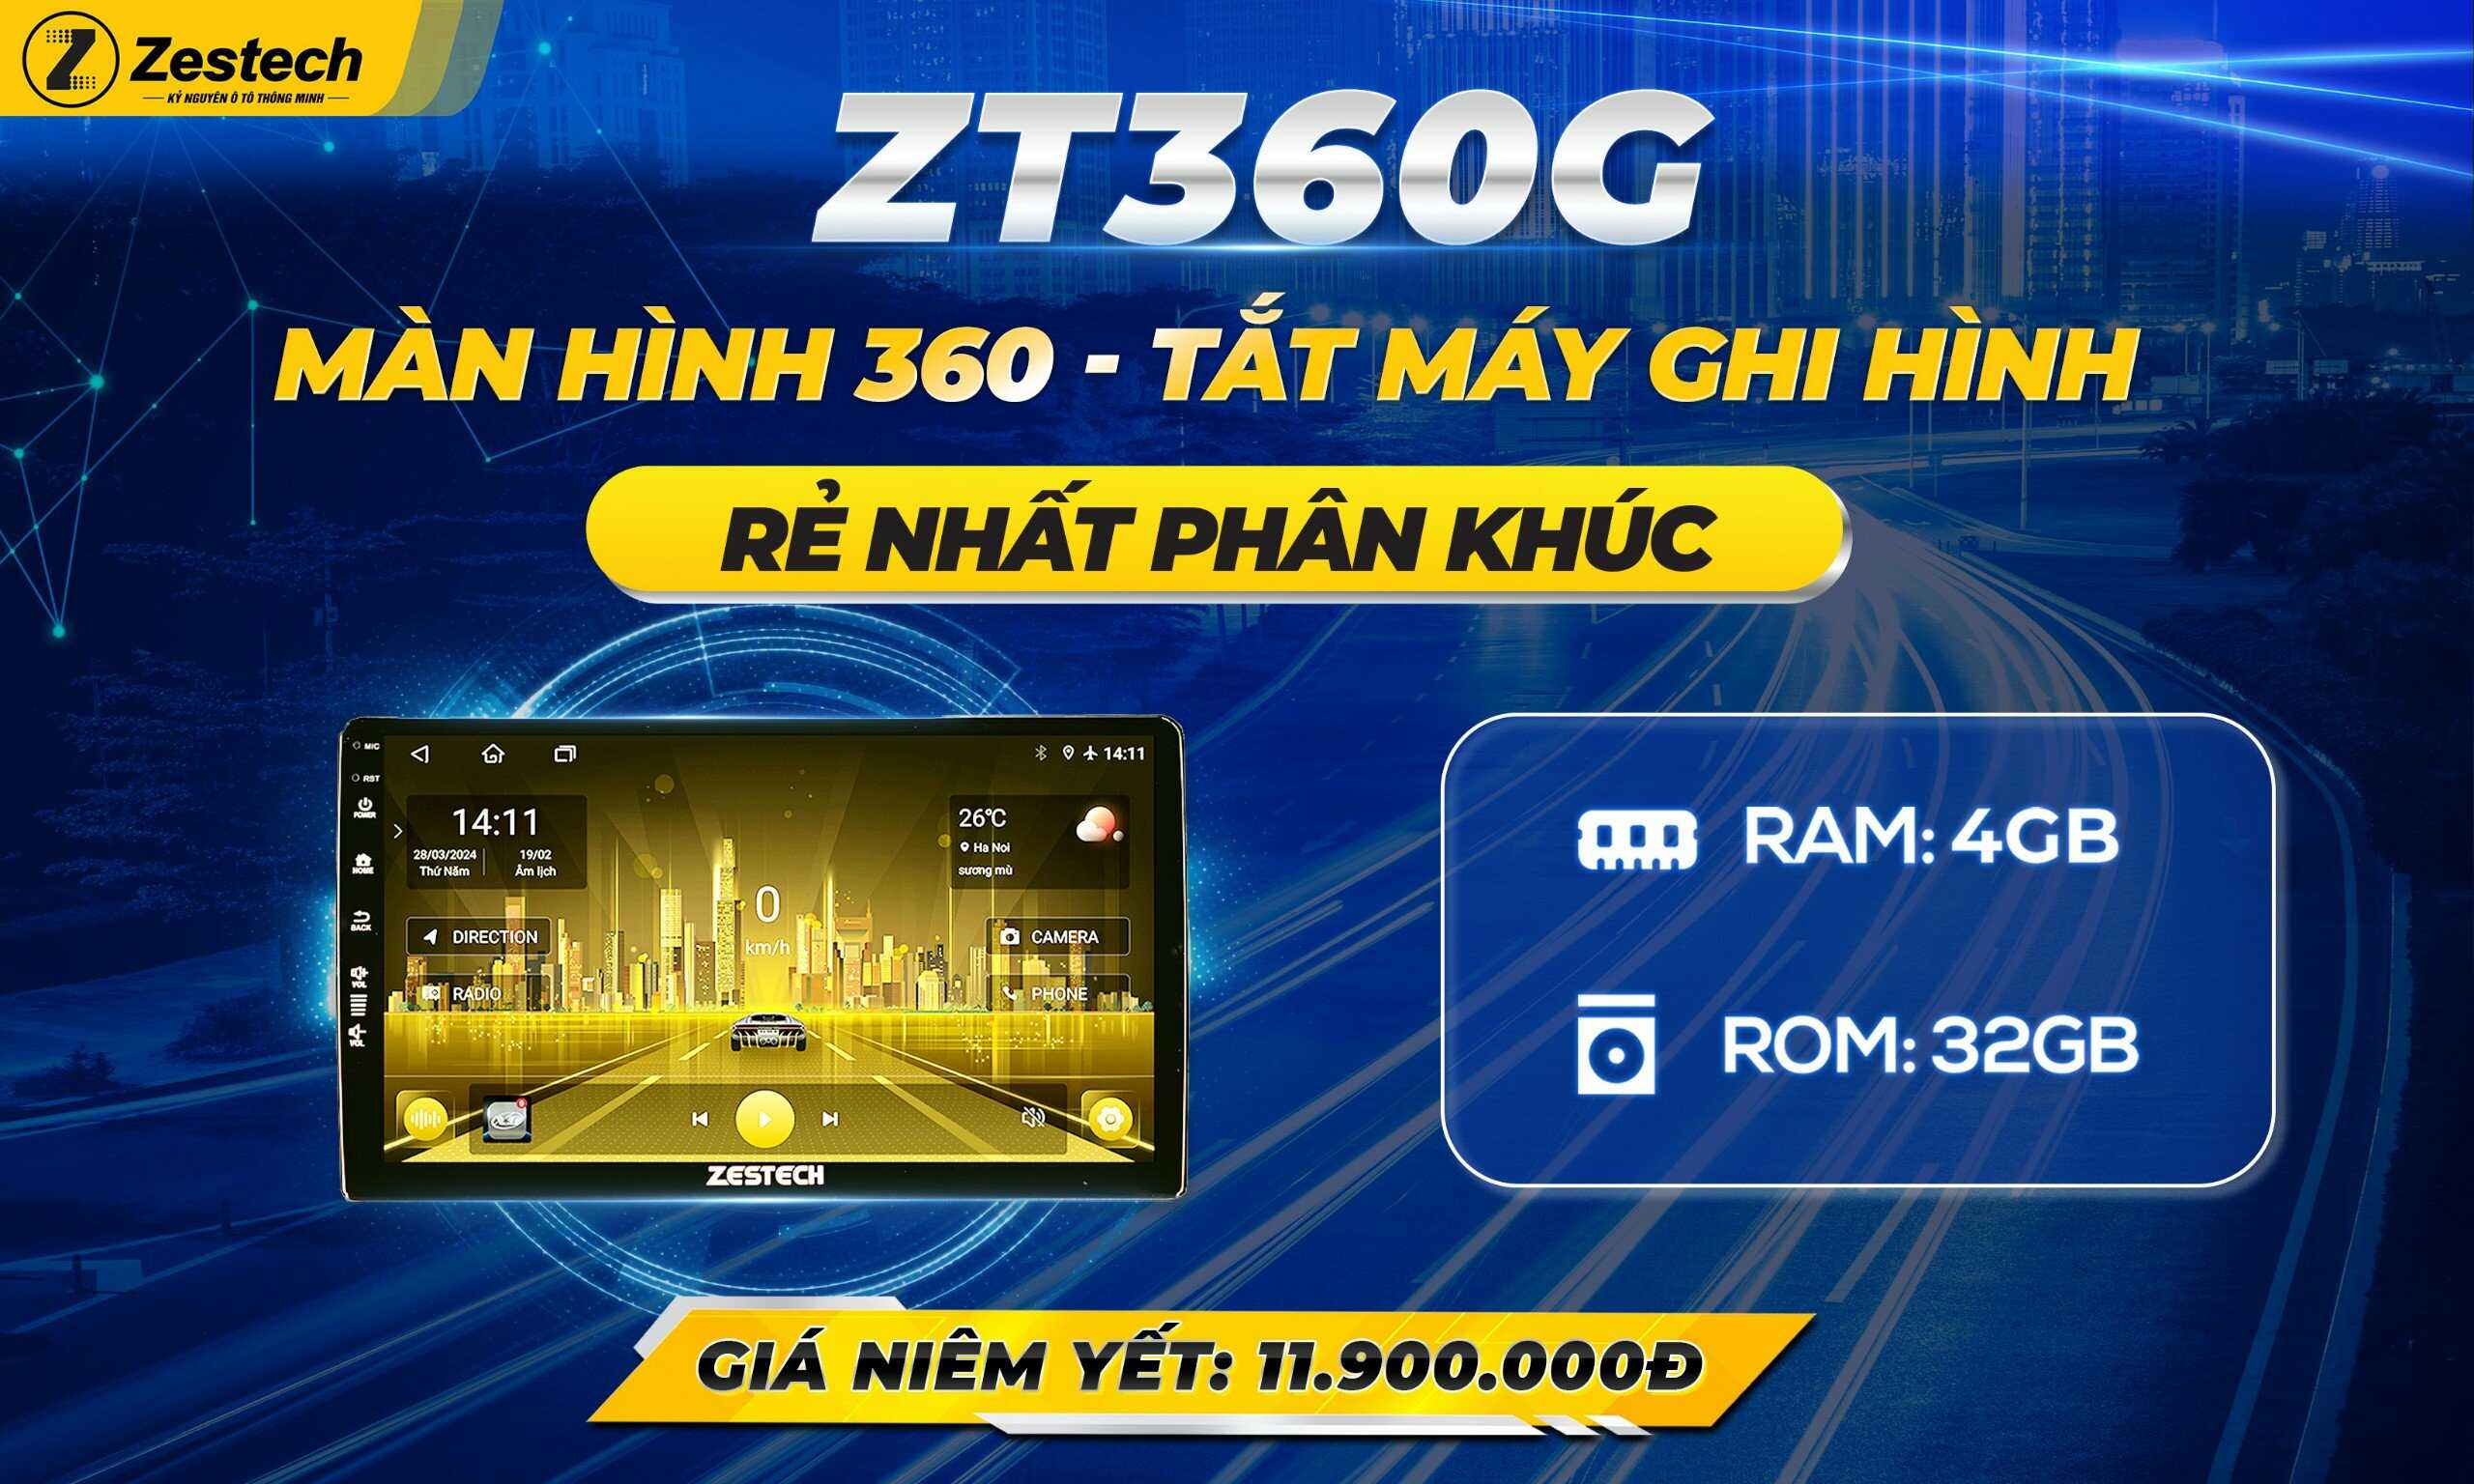 ZT360G: Màn hình 360 - Tắt máy ghi hình rẻ nhất phân khúc